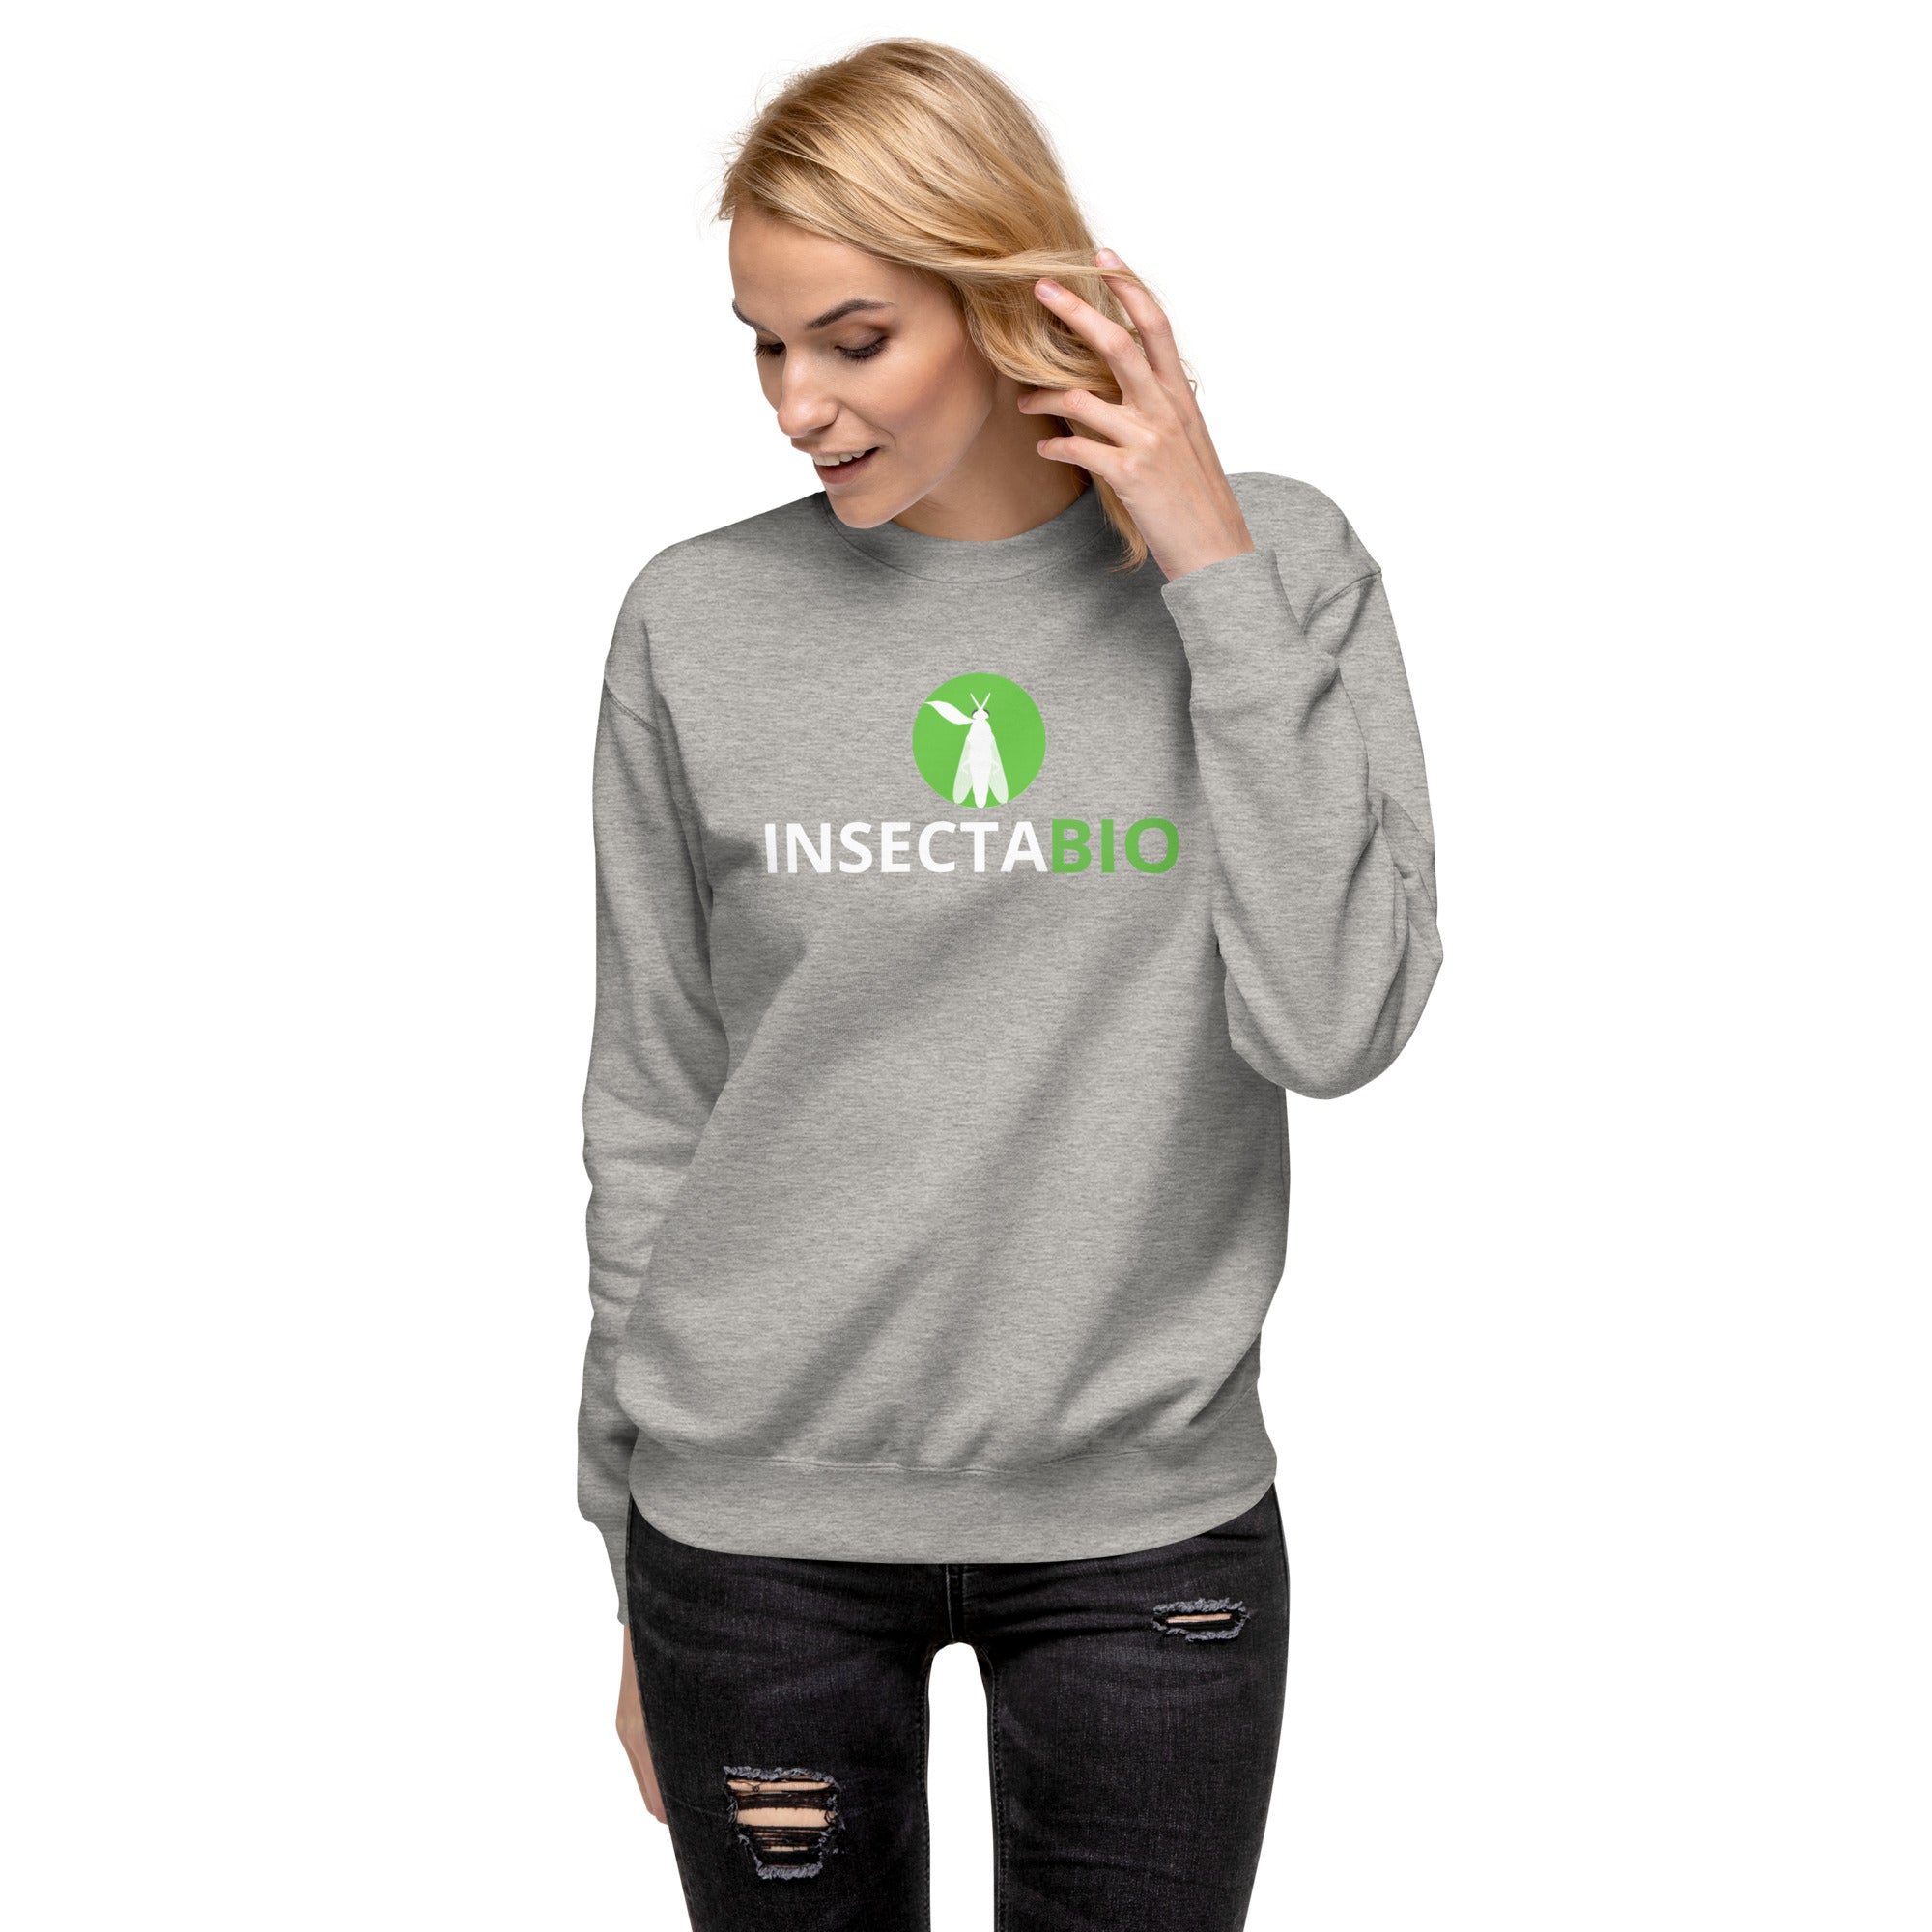 InsectaBio Unisex Premium Sweatshirt